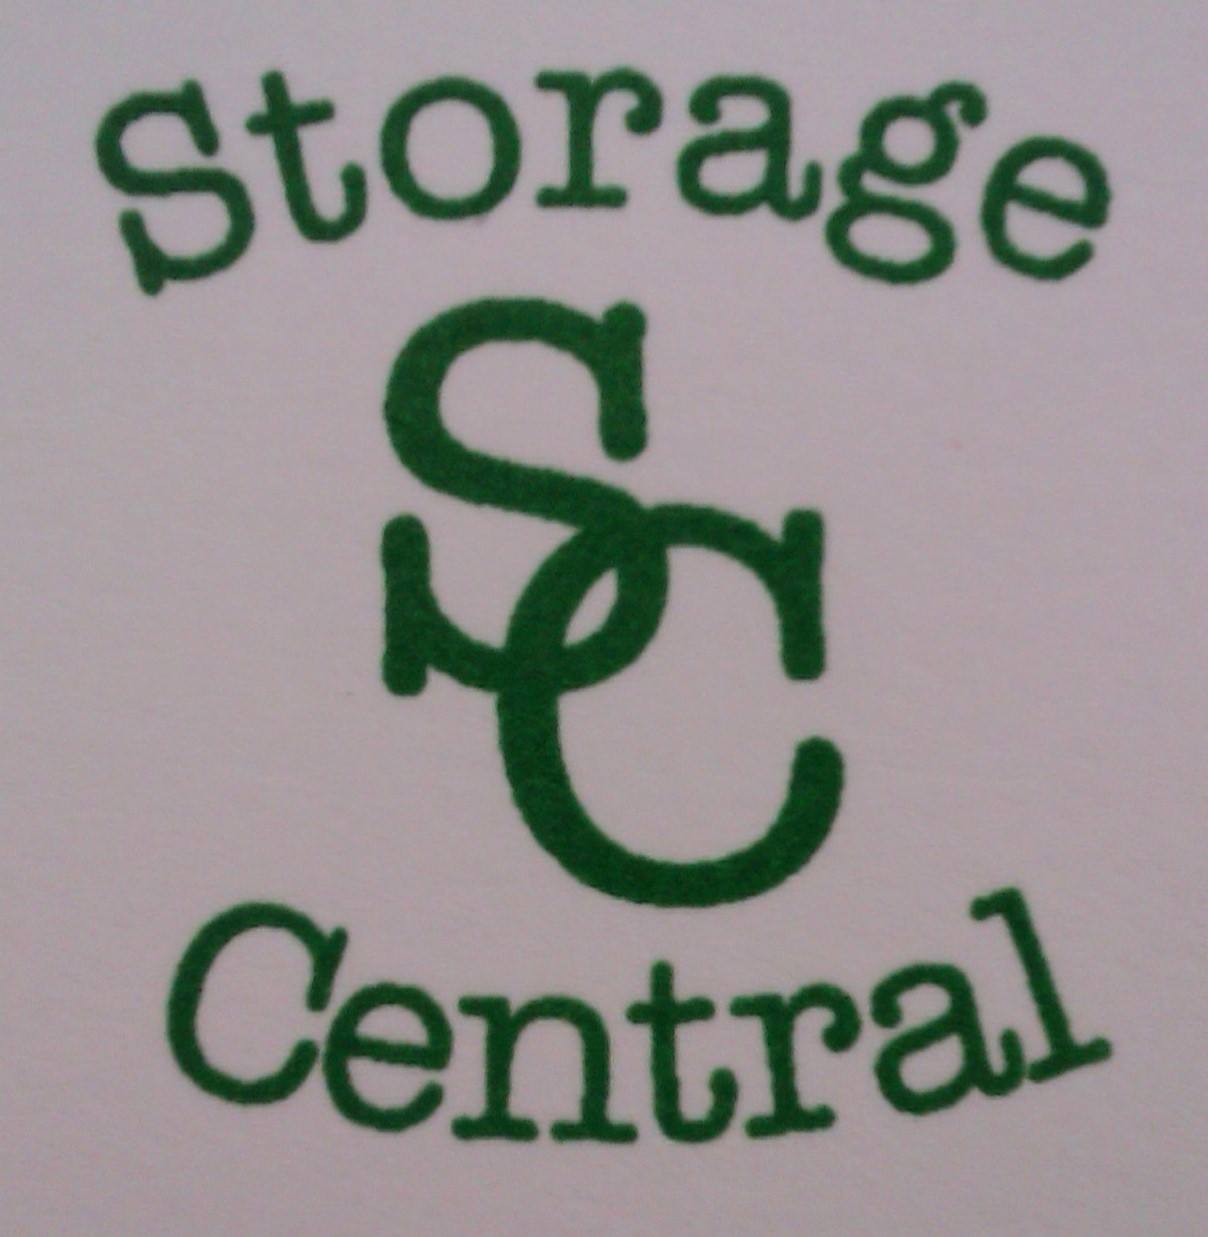 Storage Central